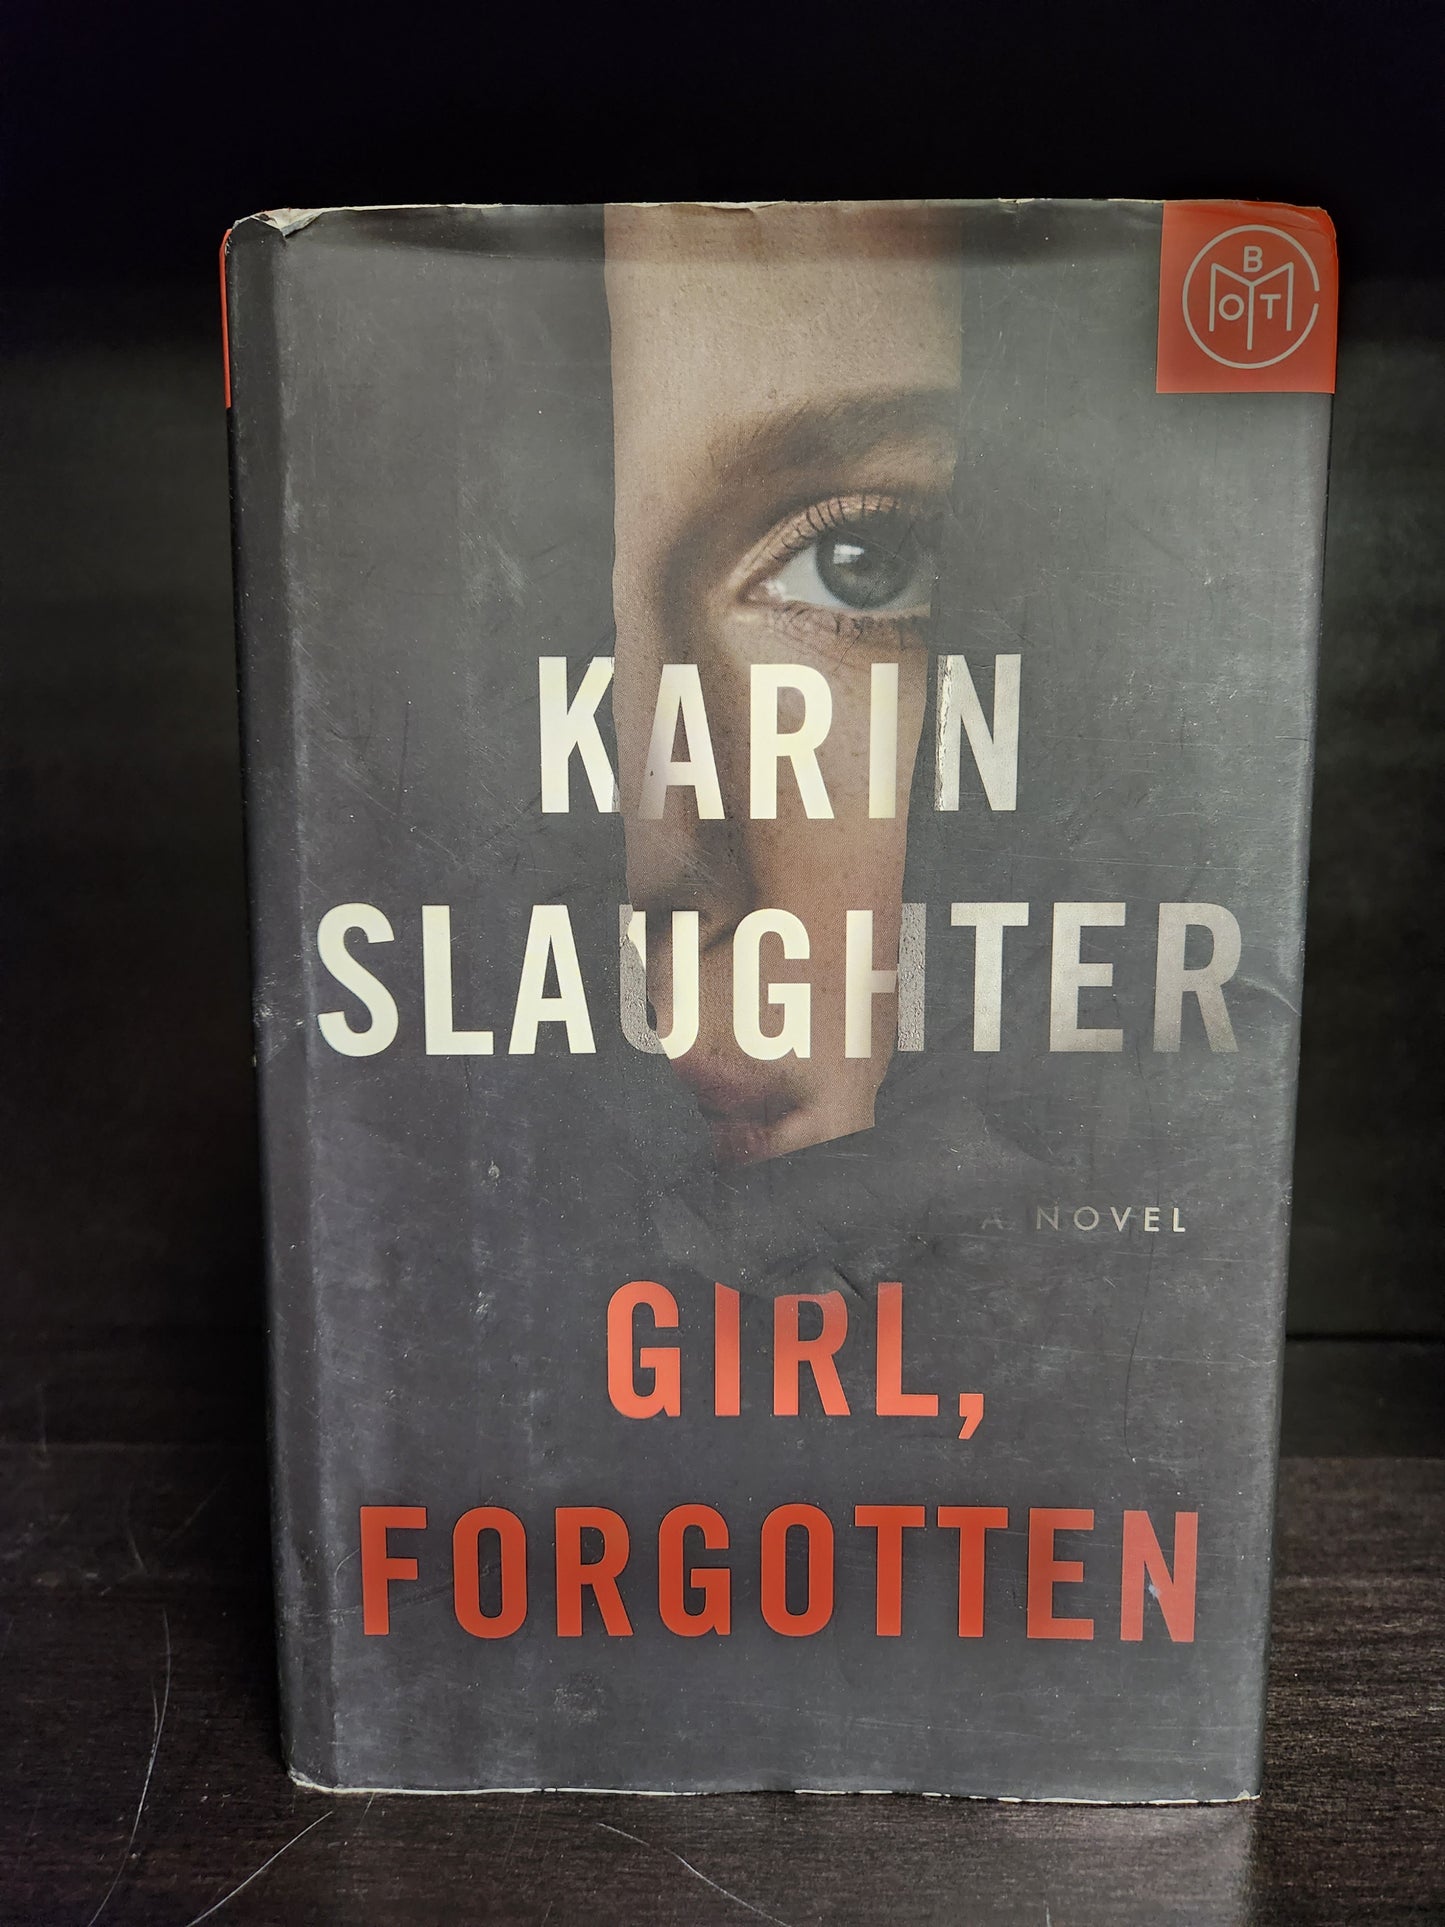 "Girl, Forgotten" by Karen Slaughter